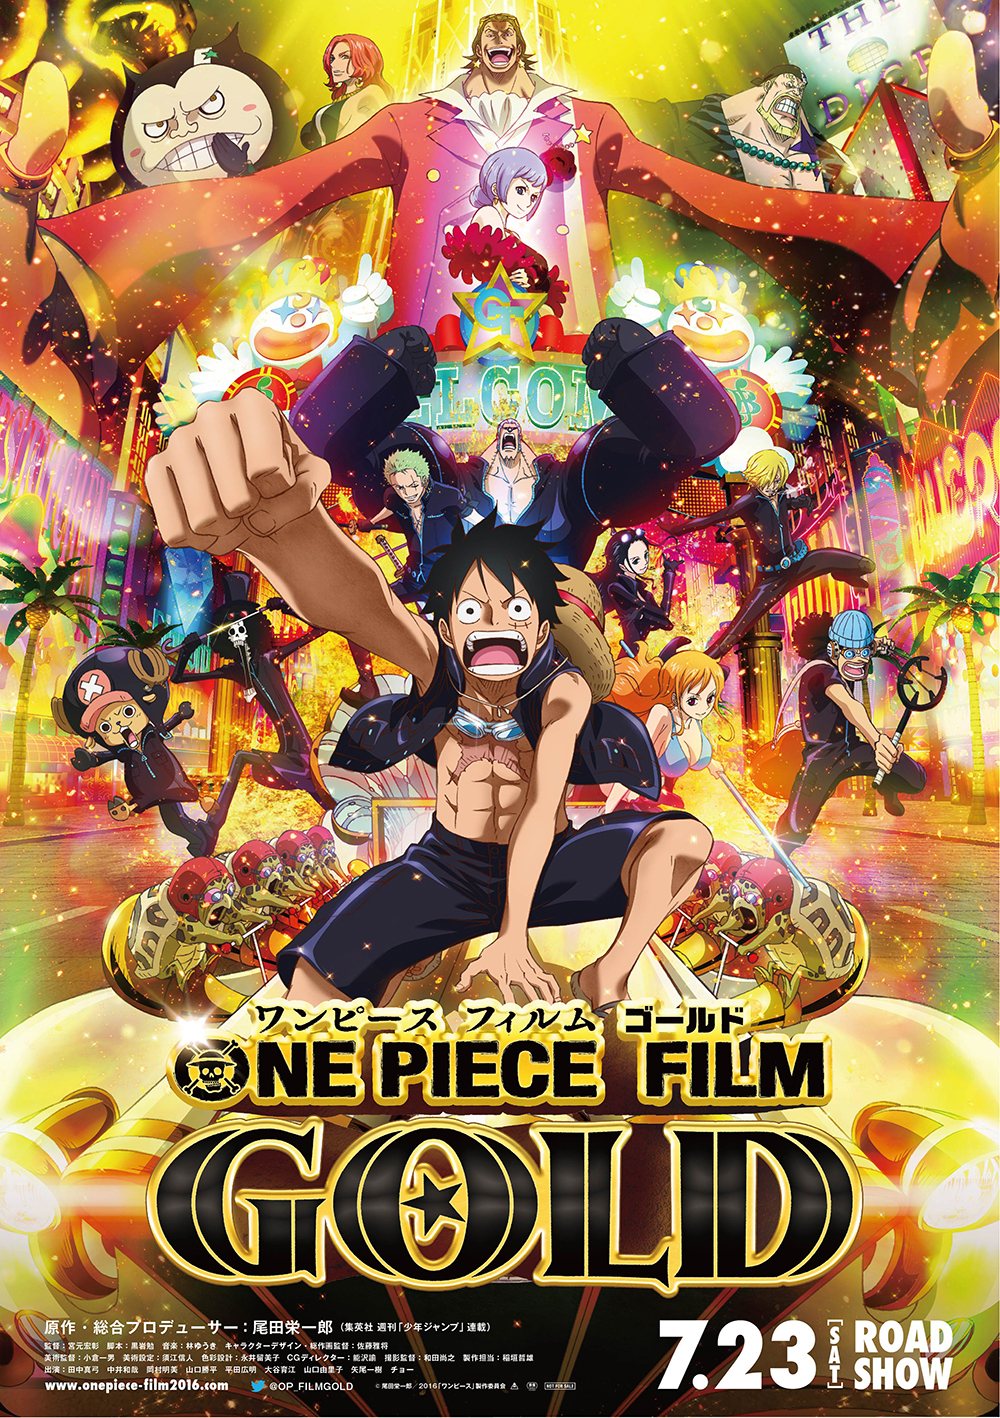 リアル脱出ゲーム One Piece Film Gold 黄金遊園地からの脱出 イベント限定グッズを販売決定 株式会社scrapのプレスリリース